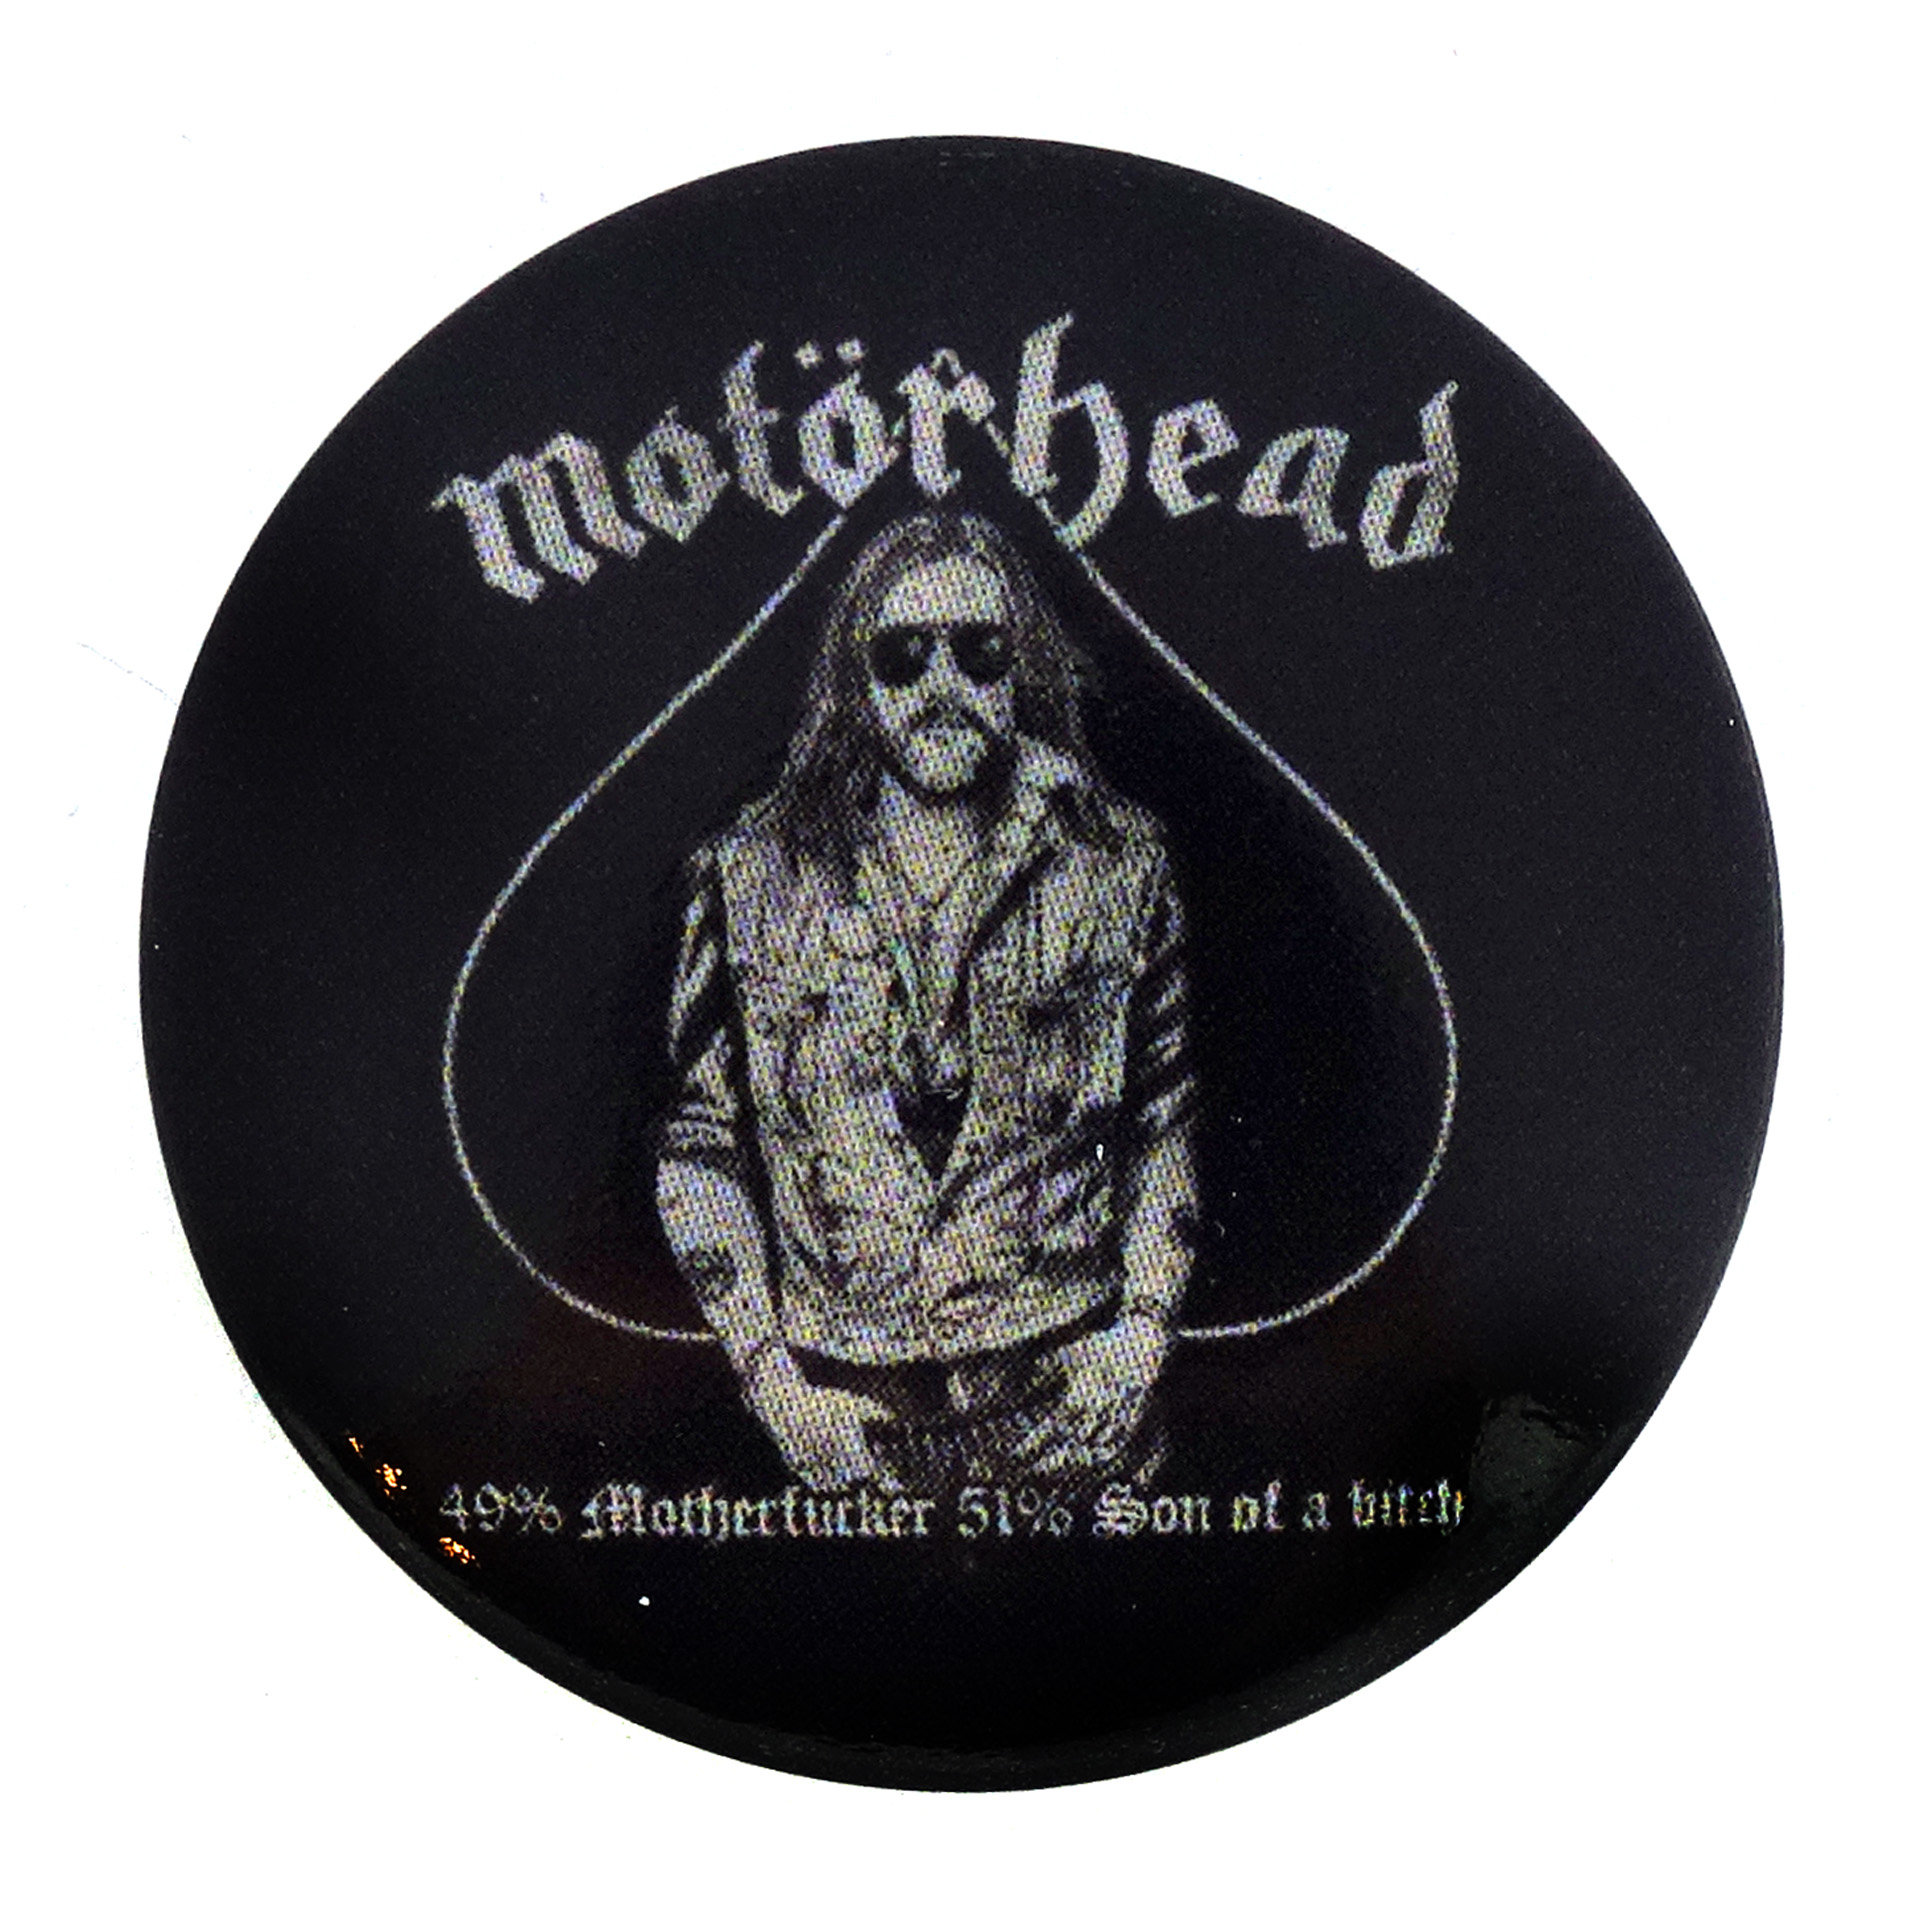 Motörhead Button Lemmy 49% Motherfucker 51% Son Of A Bitch Man